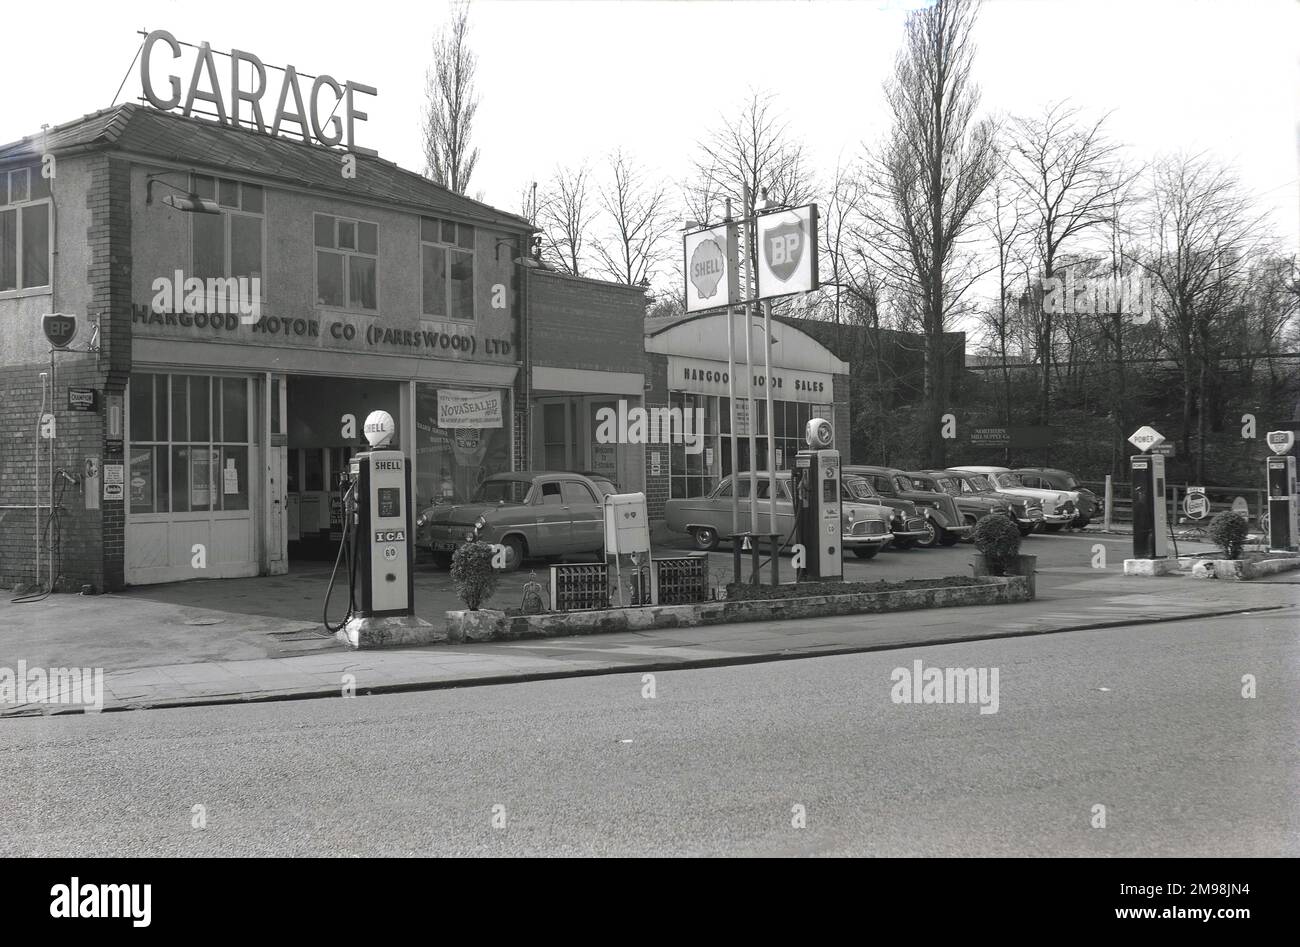 1957, historique, extérieur de la Hargood Motor Co sur Wilmslow Rd, Didsbury, Manchester, Angleterre, Royaume-Uni. Le mot garage est affiché en grandes lettres majuscules sur le toit de l'immeuble de deux étages et les voitures du jour sont garées à l'extérieur du département des ventes de moteurs à droite de l'image. Comme le montrent les panneaux et les pompes à essence de la piste, différentes marques de carburant, dont BP, Shell, Power et National, ont été offertes à l'automobiliste de cette époque. Banque D'Images